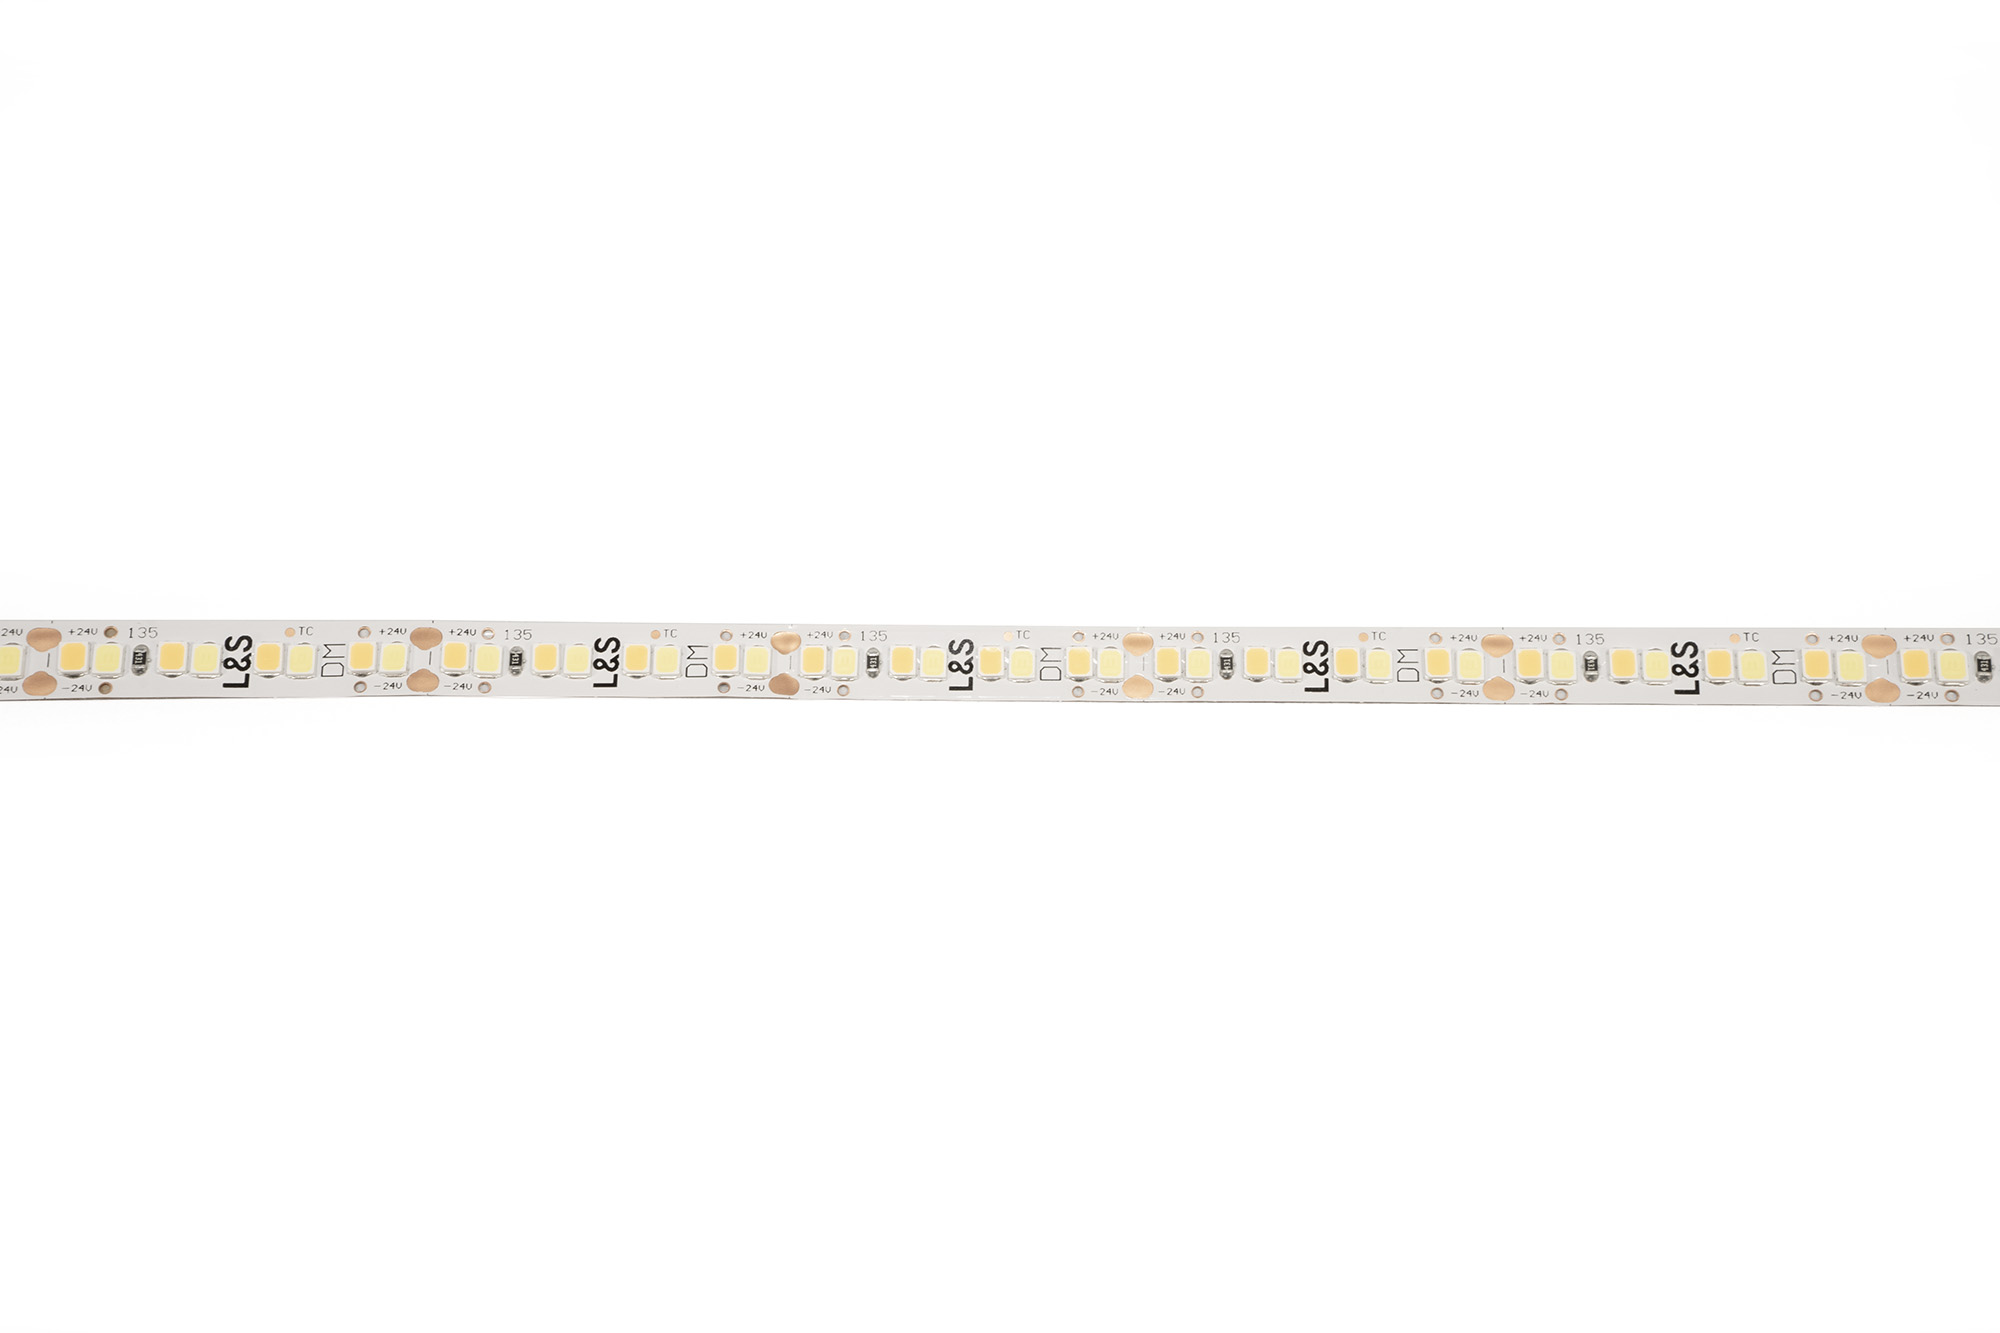 L&S LED-Band HE 112+112LEDs/m (2835), 2700-6500K, 4+4LEDs/35,7mm, 24DC, 4W/m, 8mmx321mm, mit 1x Anschlussltg. 200mm, white PCB, IP20,